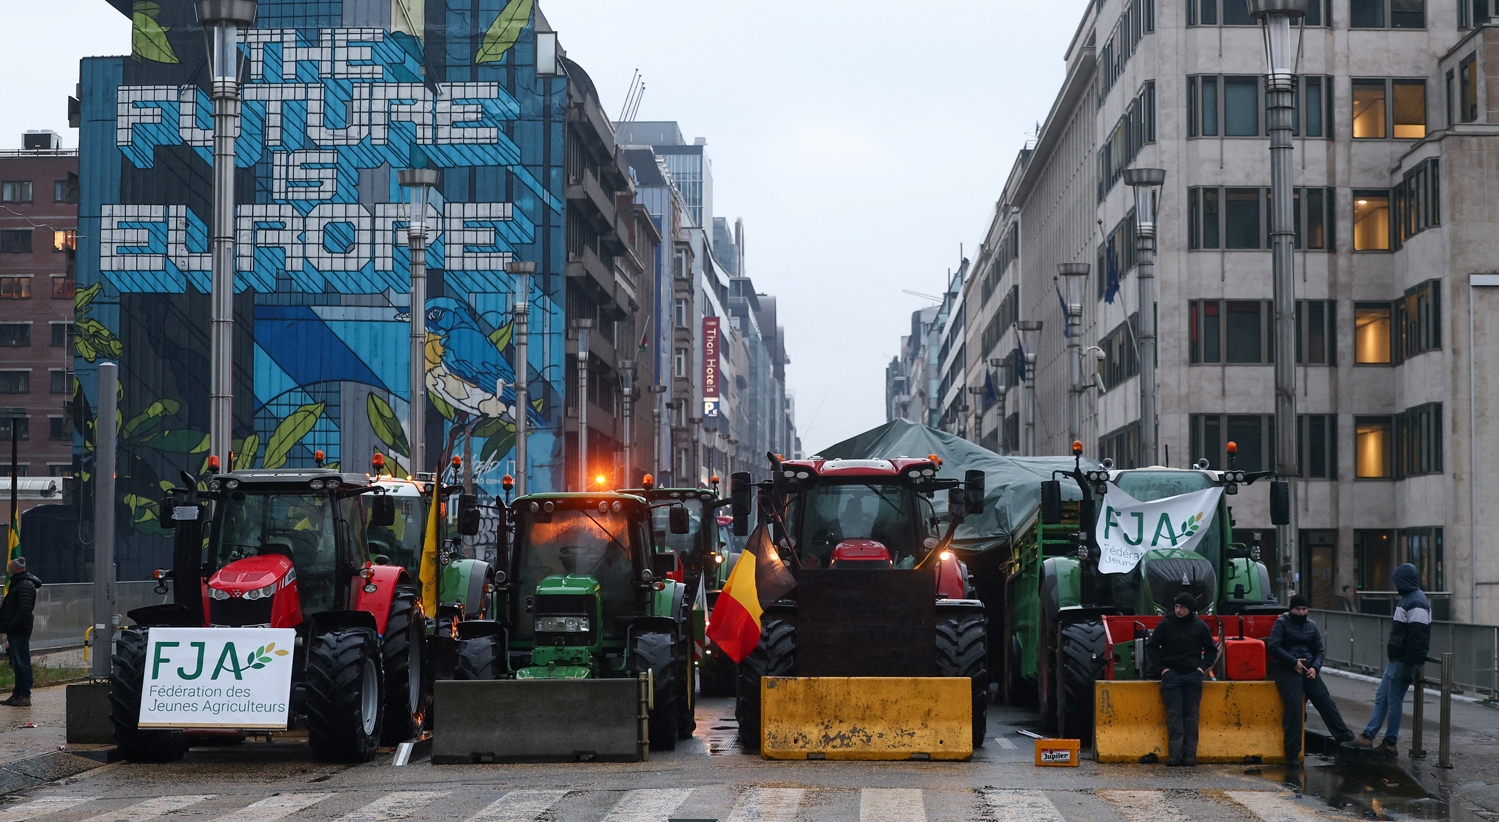 Tensão no bairro europeu. Agricultores em protesto e polícia medem forças em Bruxelas